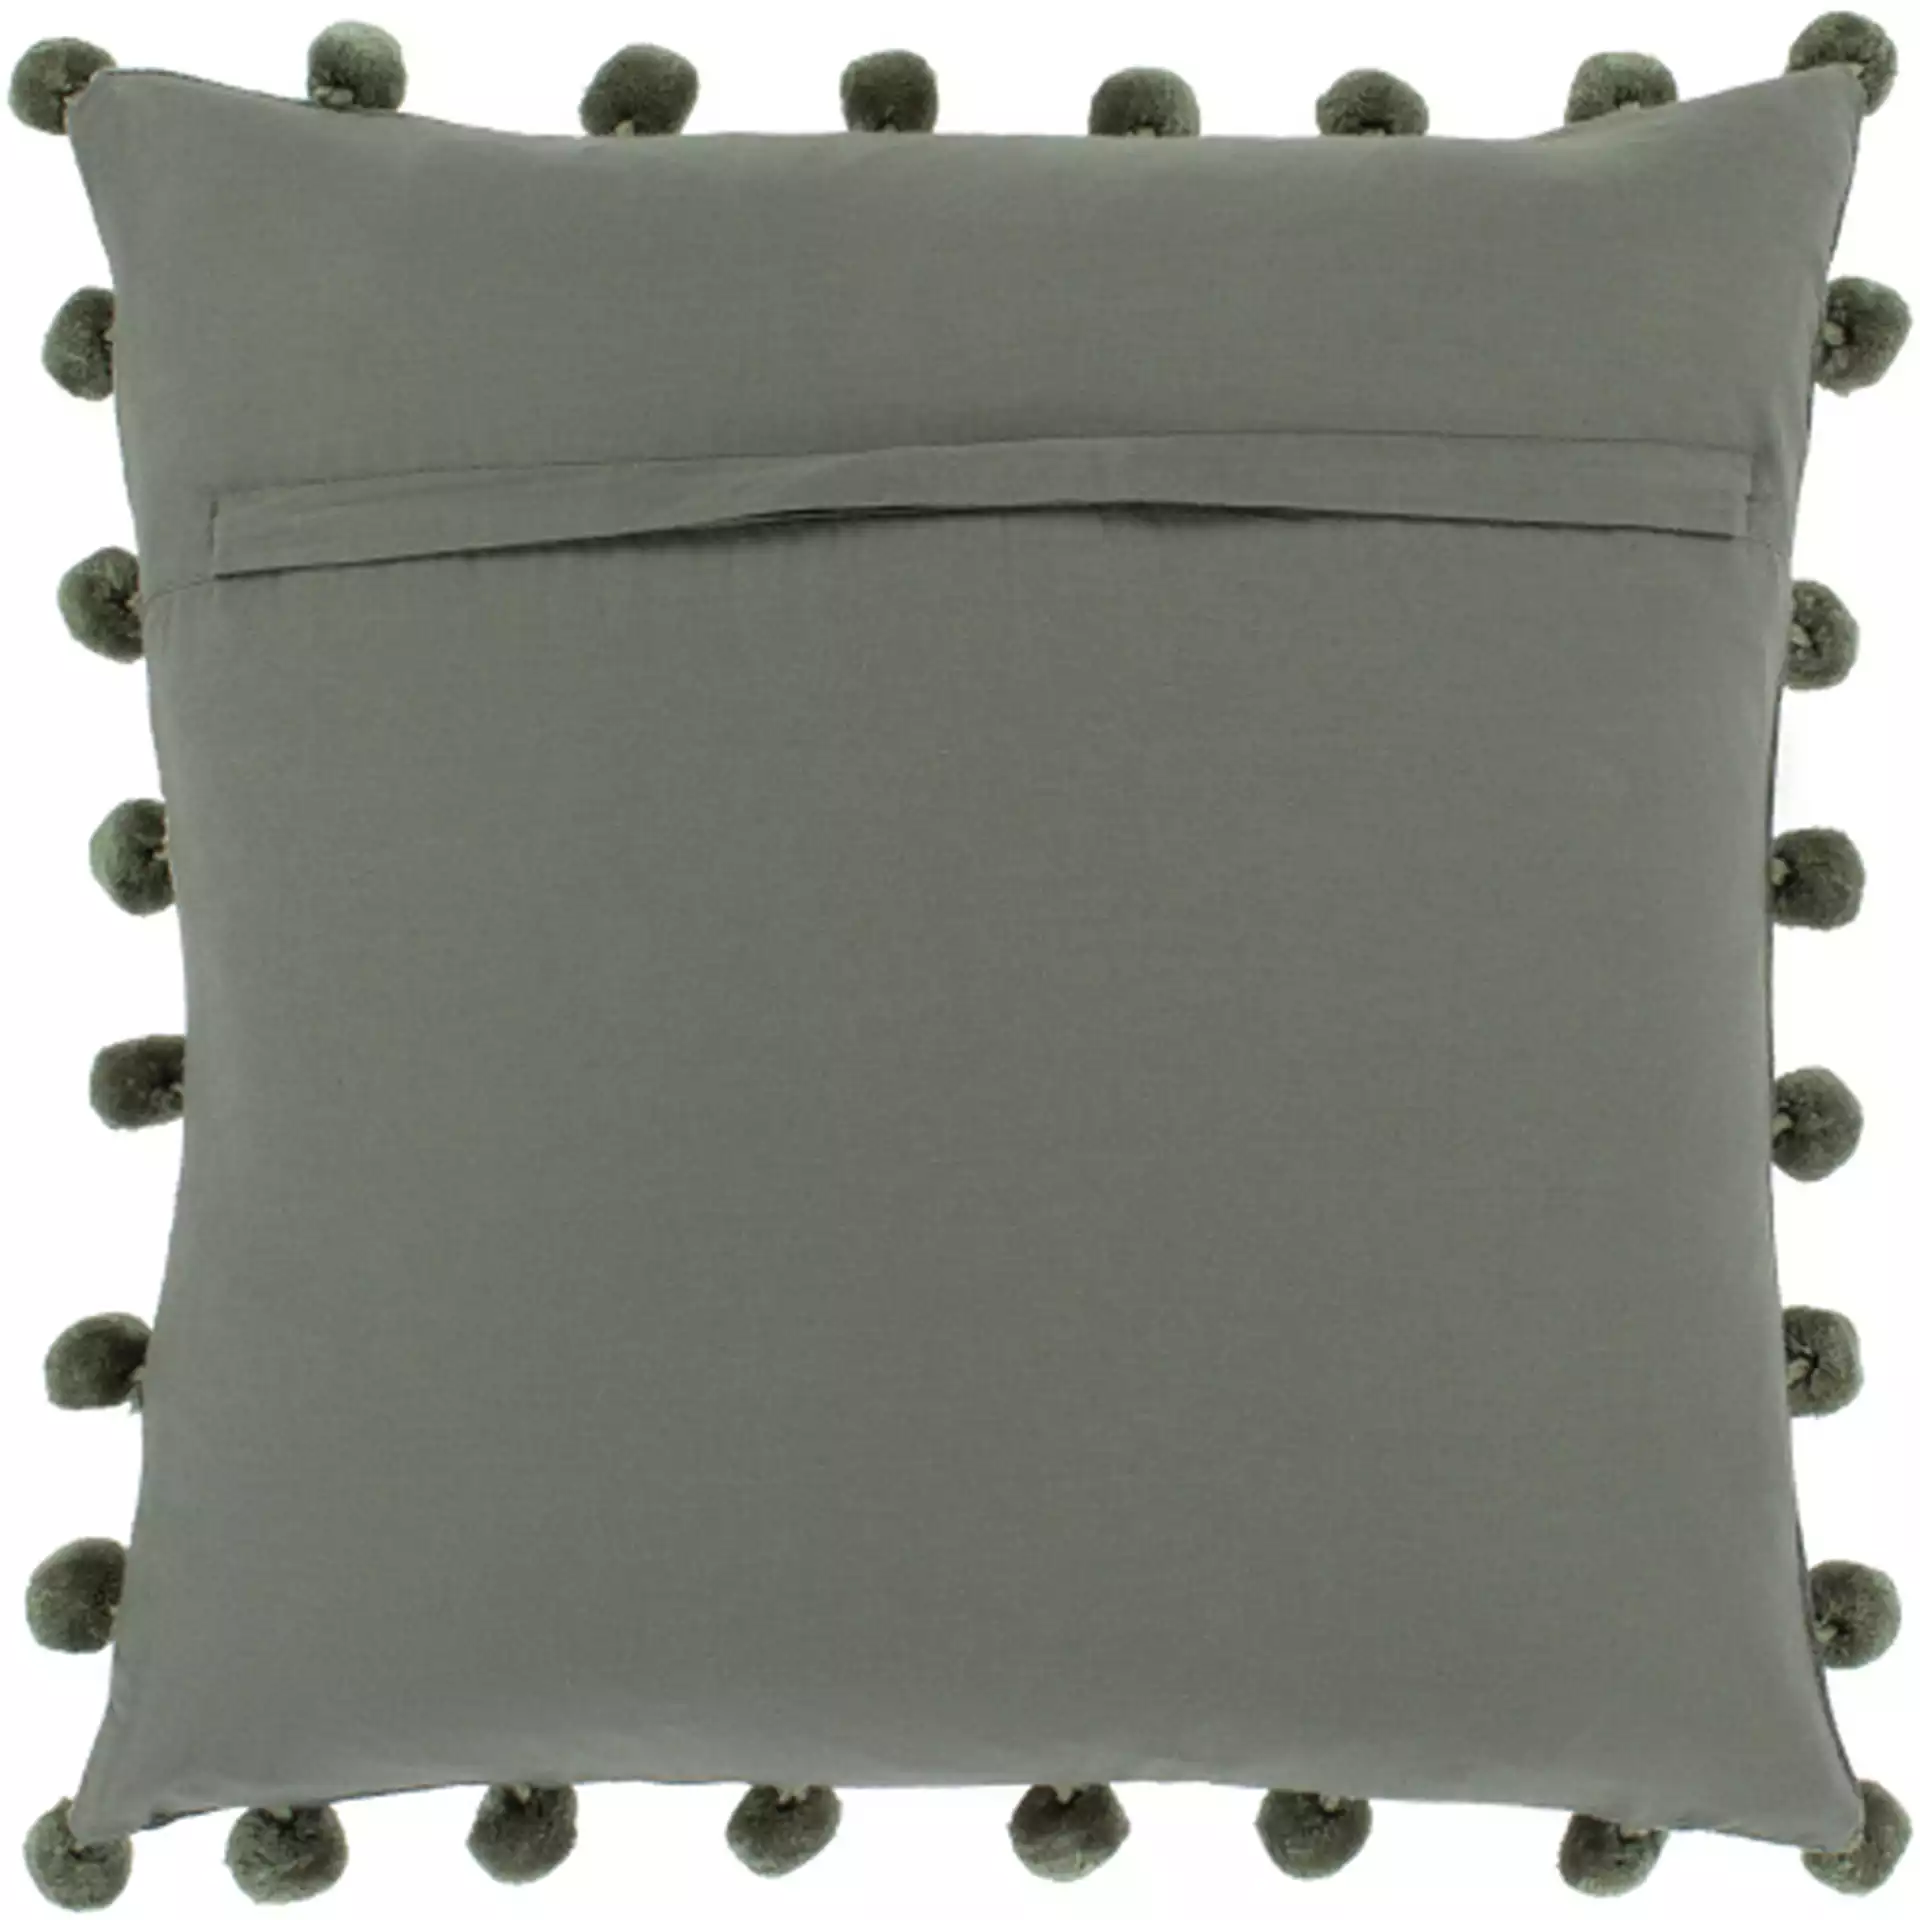 Serengeti Pillow, 20" x 20", Sage